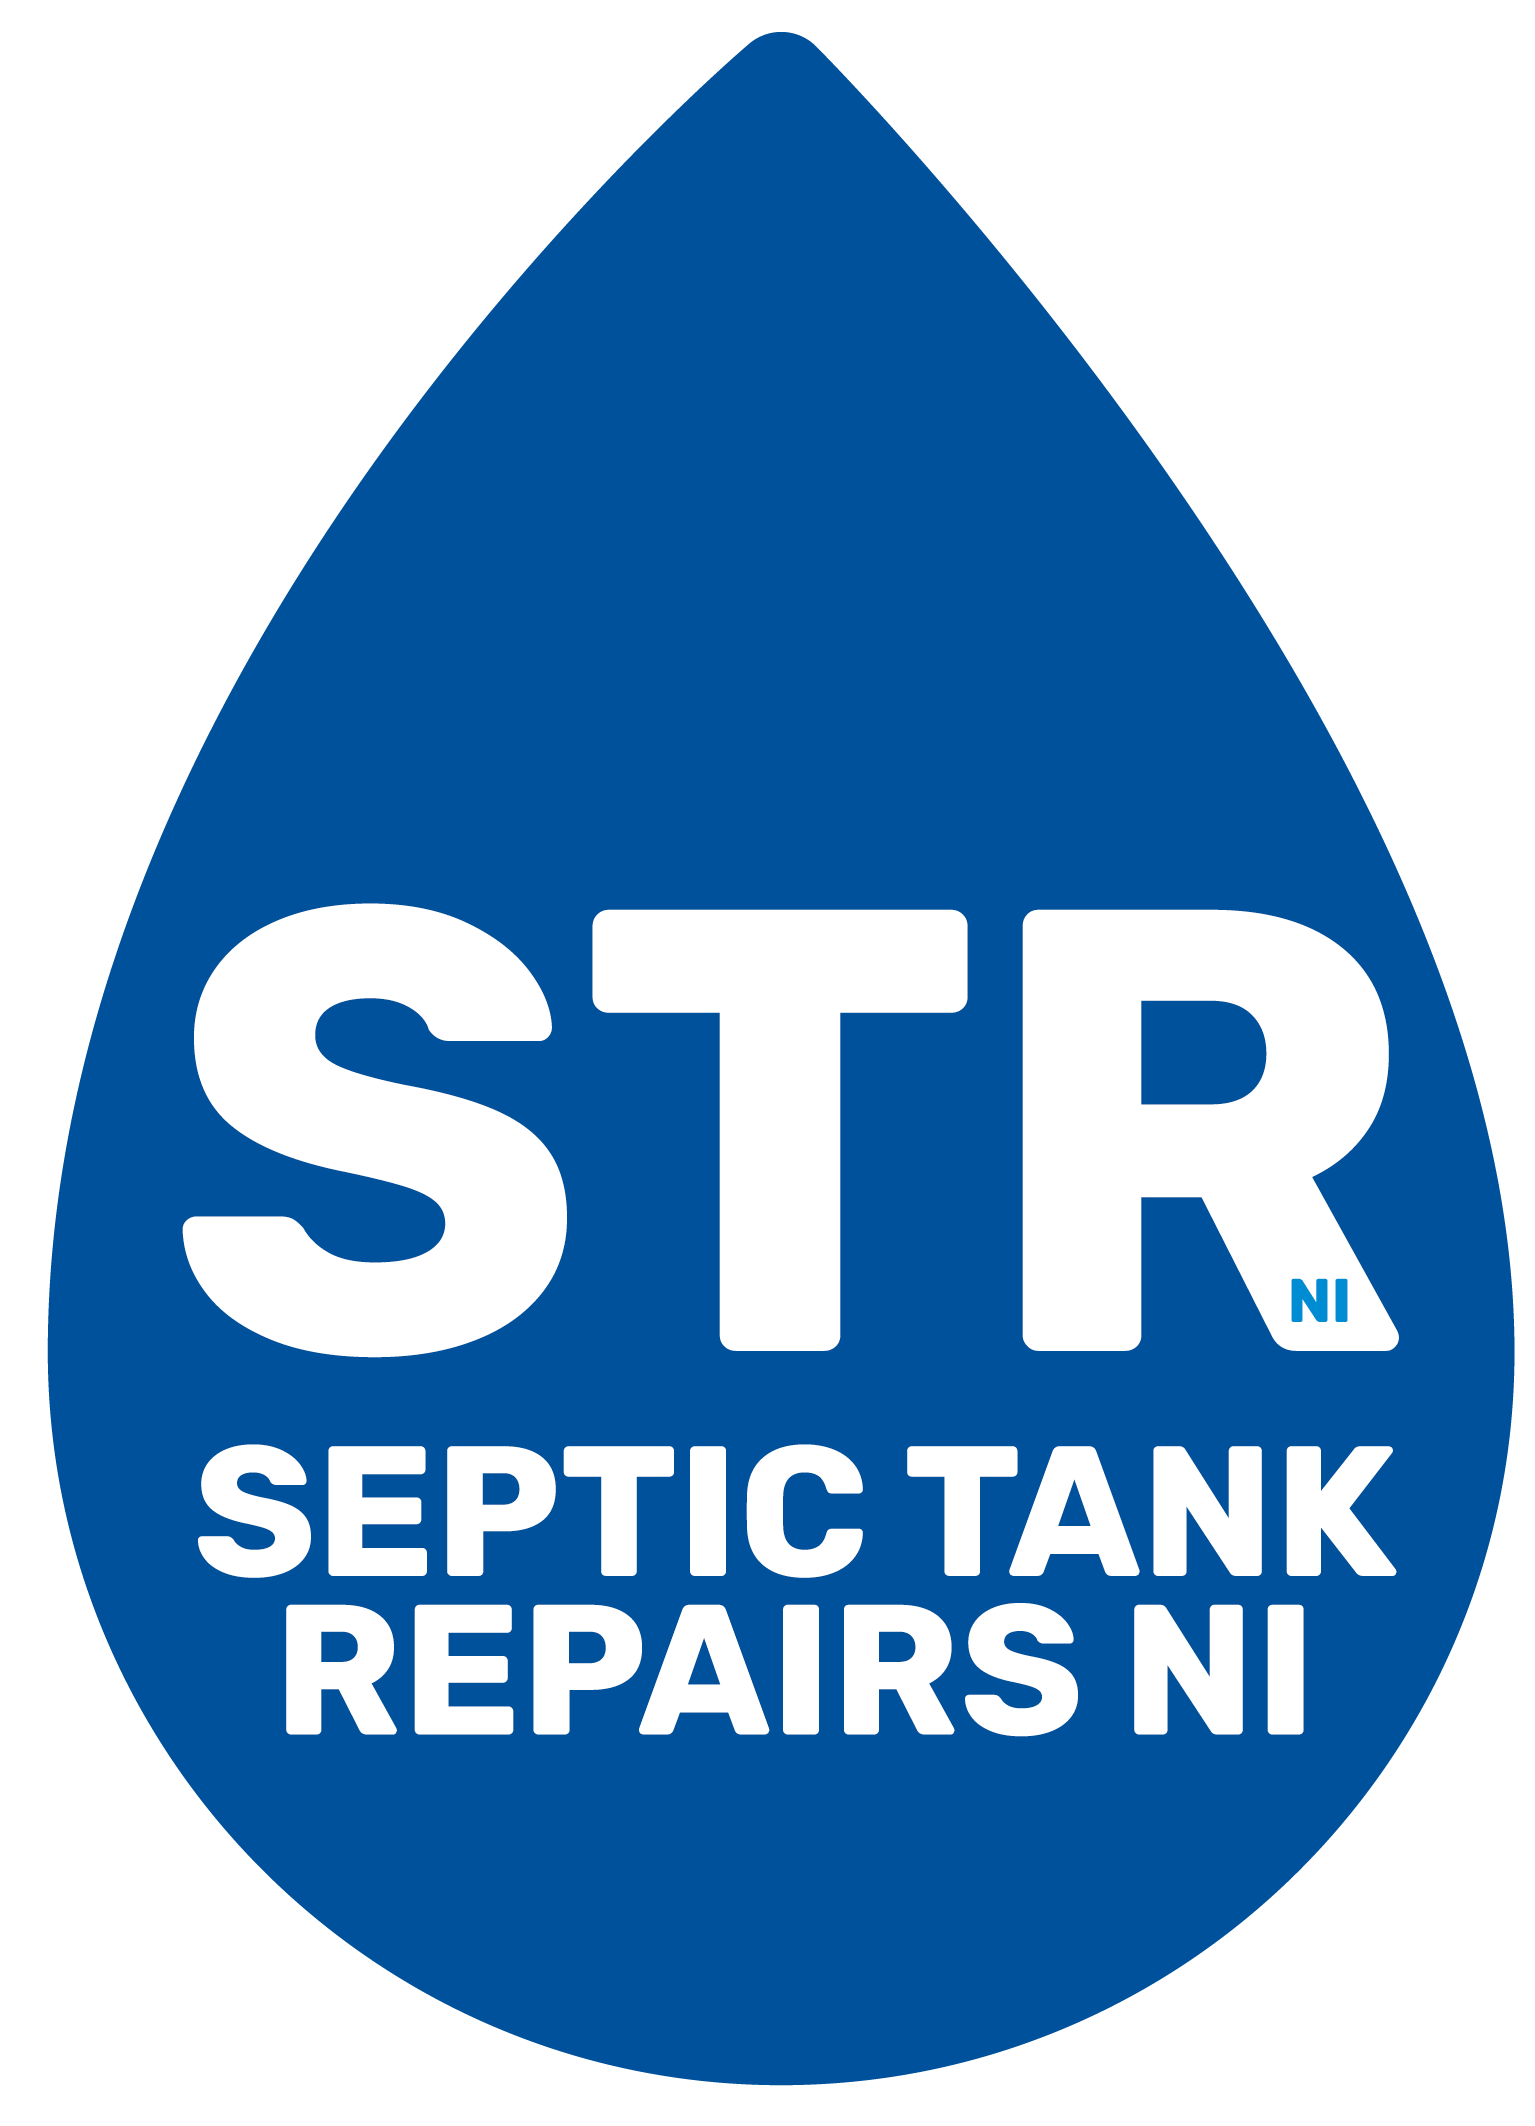 Septic Tank Repairs NI